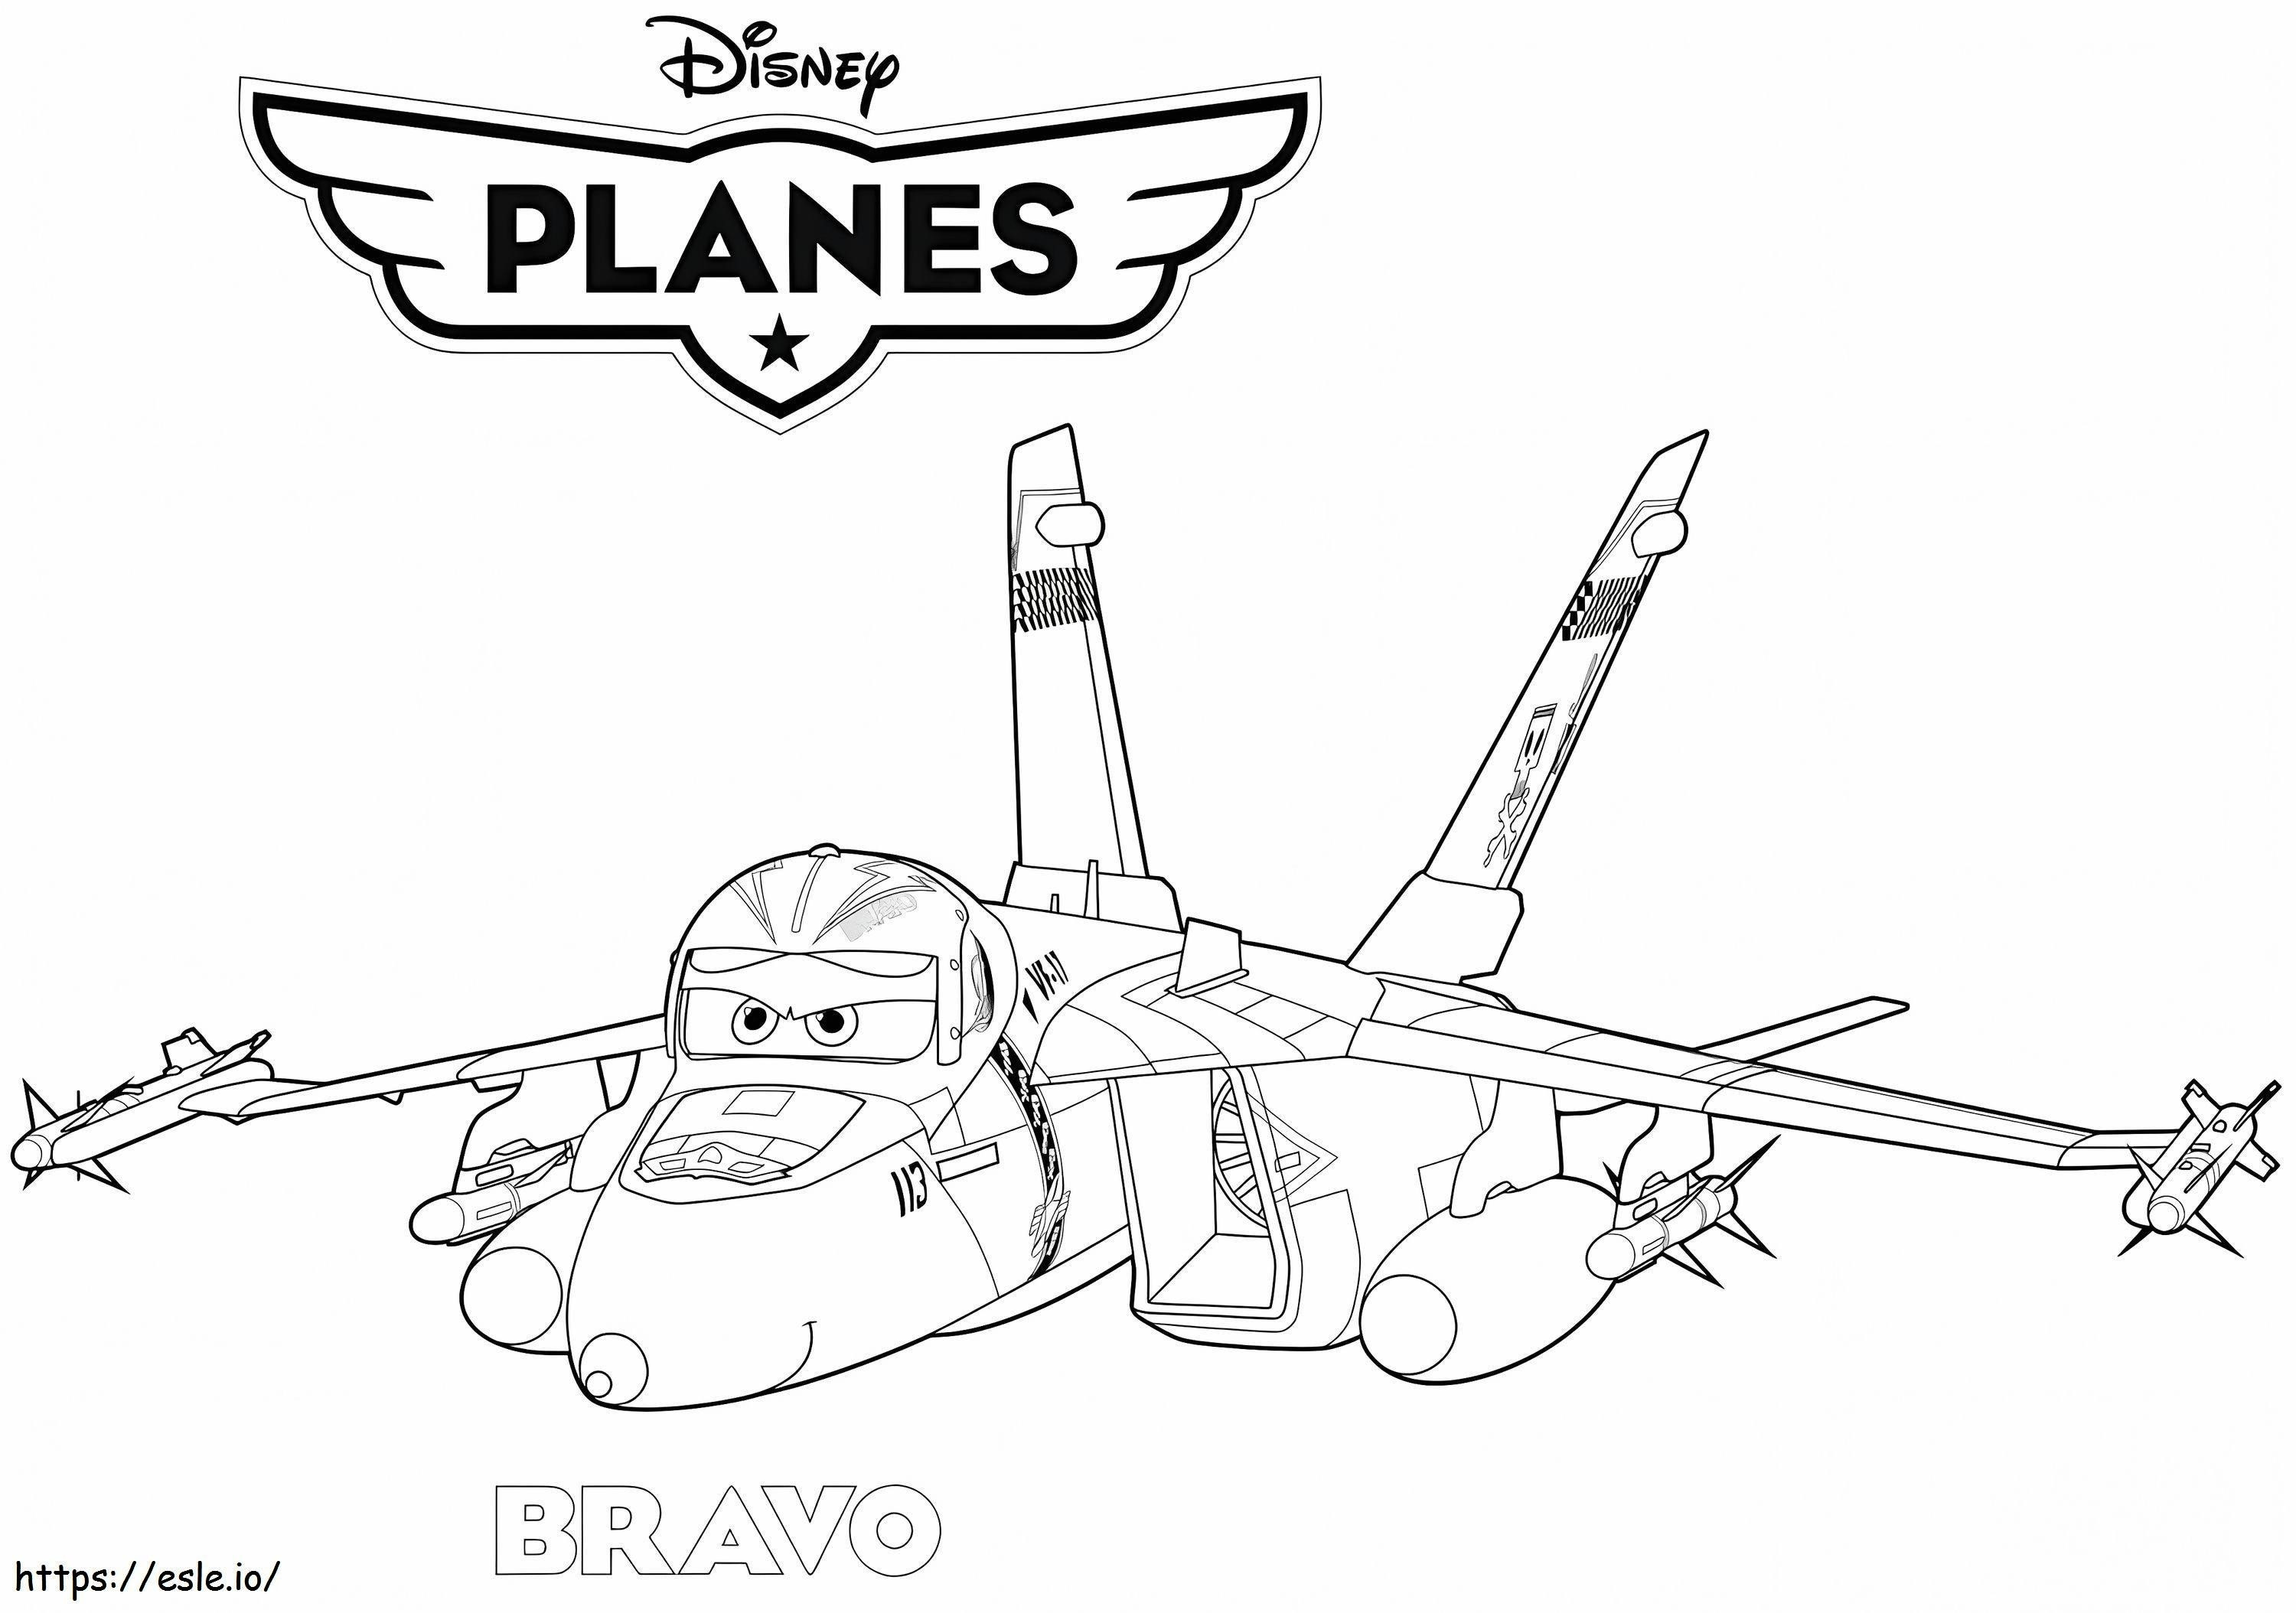 Savaş Uçağı Bravo boyama